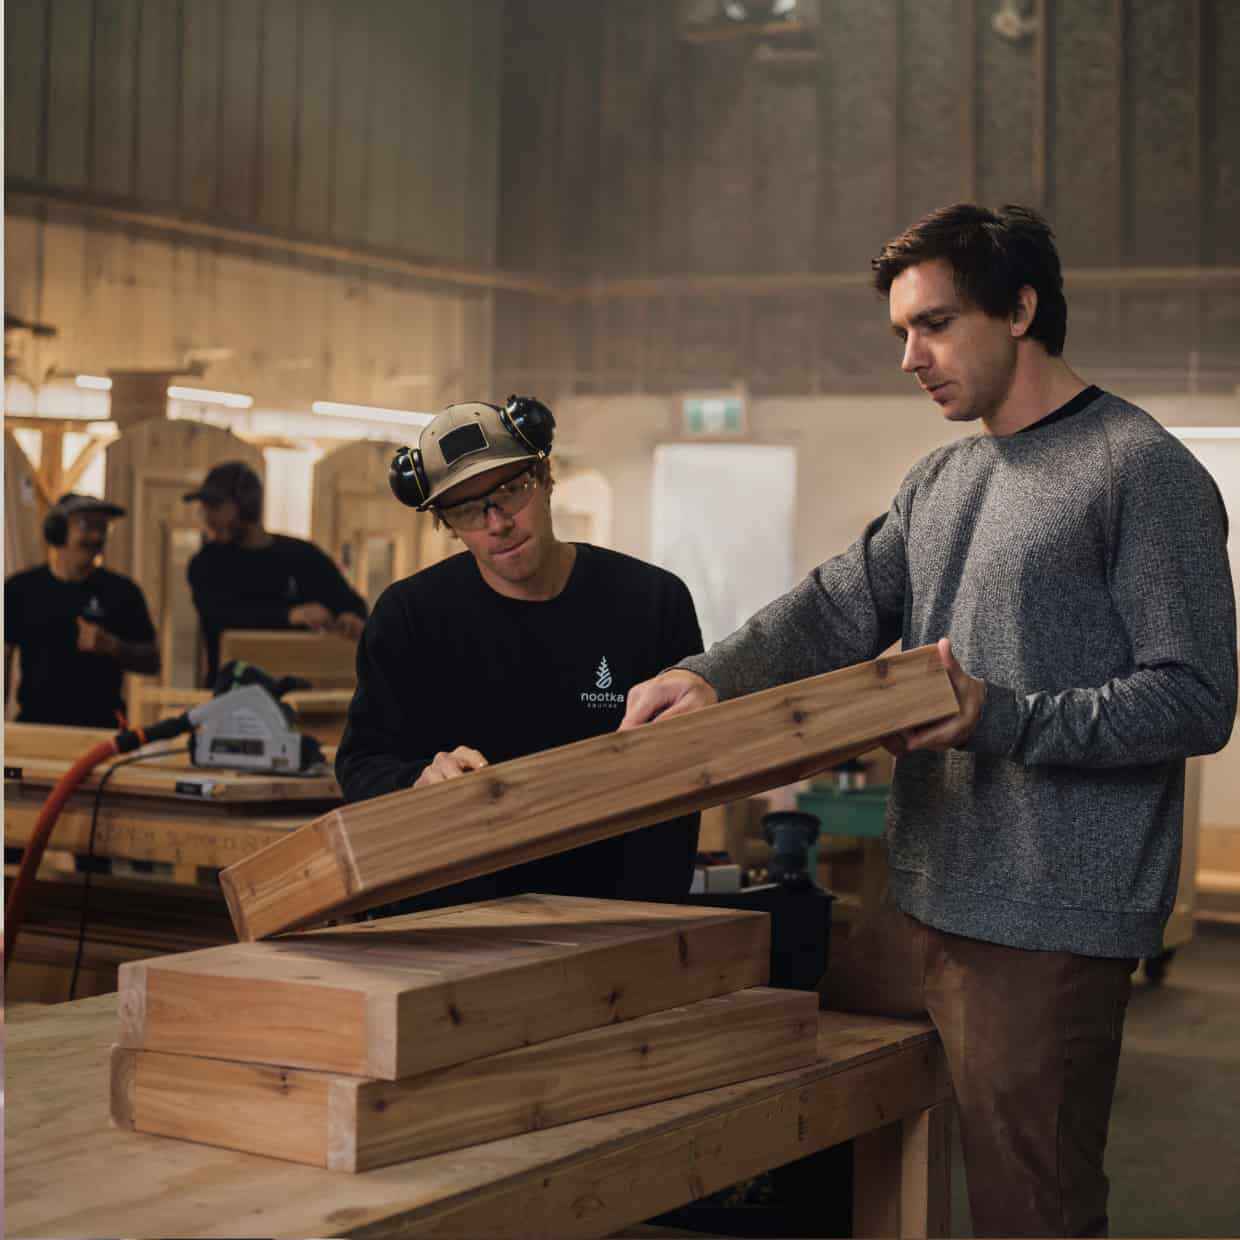 Two men doing carpentry works